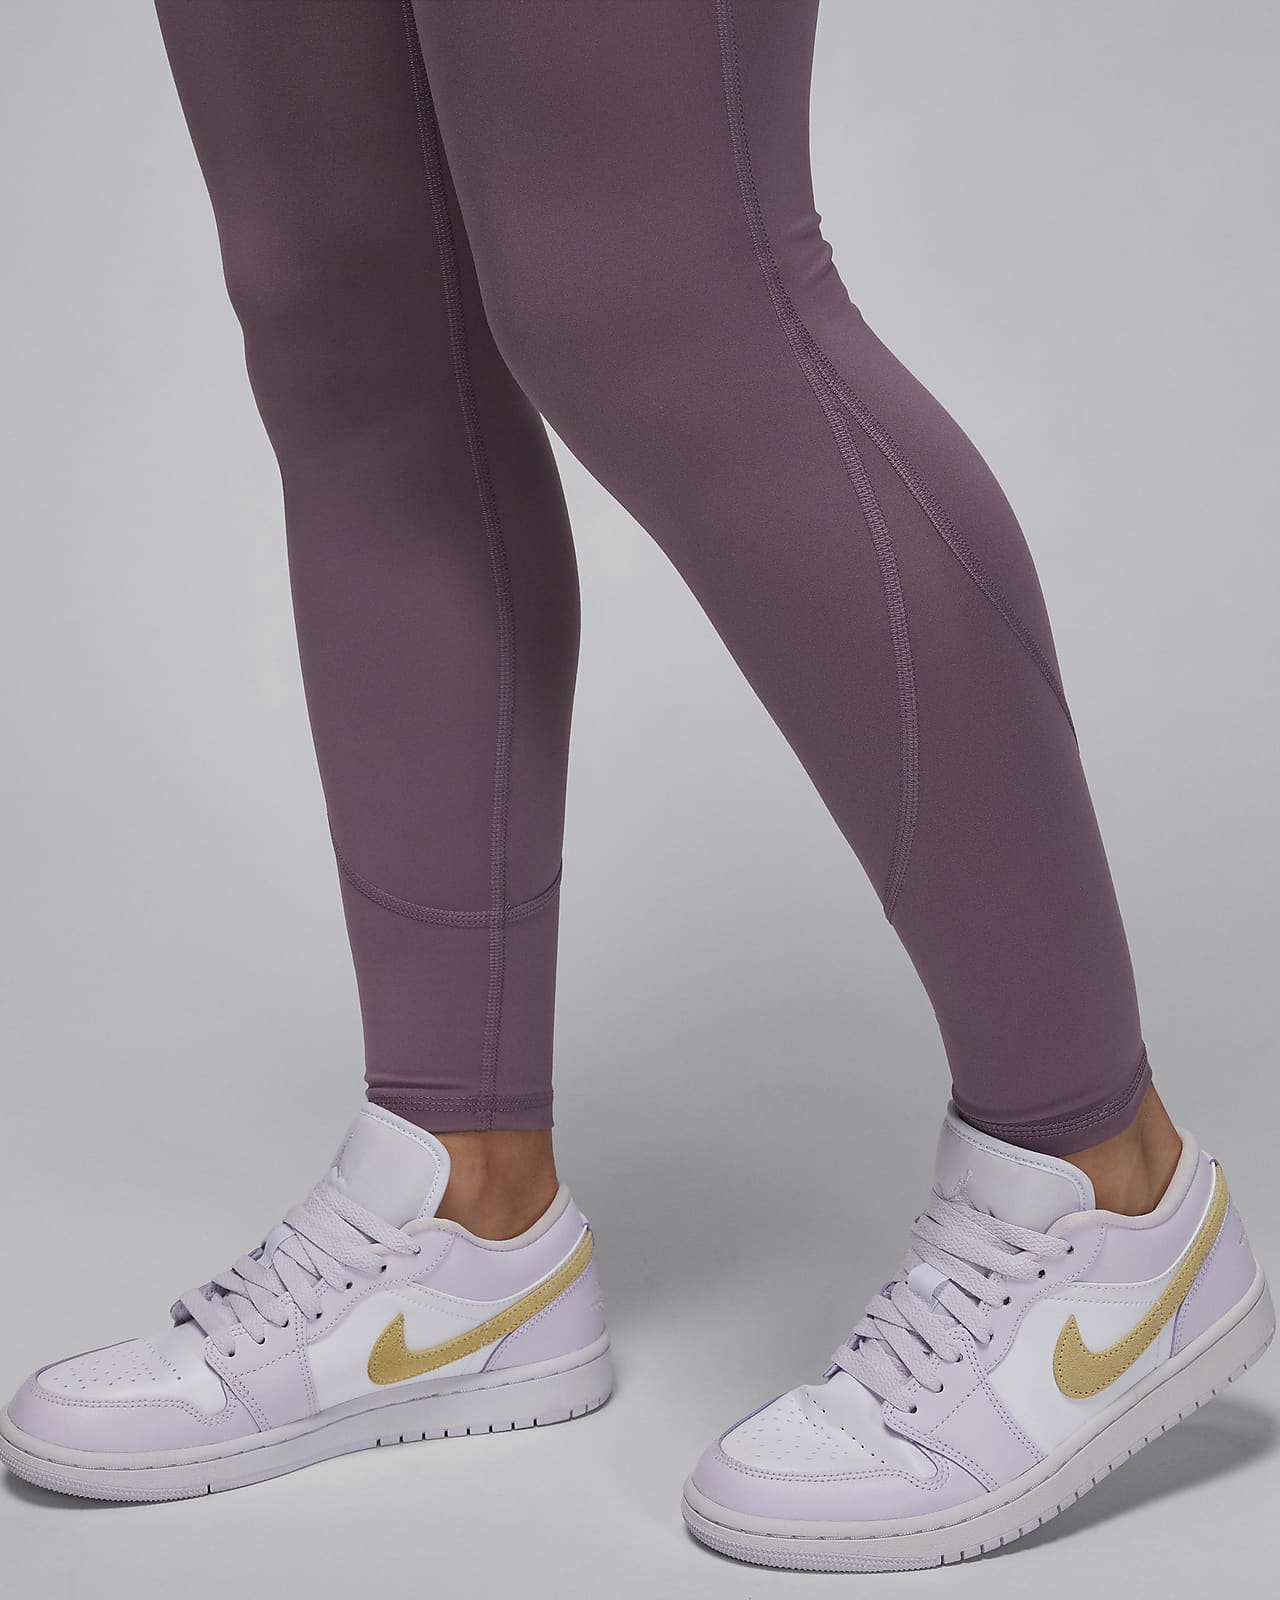 Nike Street Style Plain Cotton Logo Leggings Pants (478, CZ8529 010)